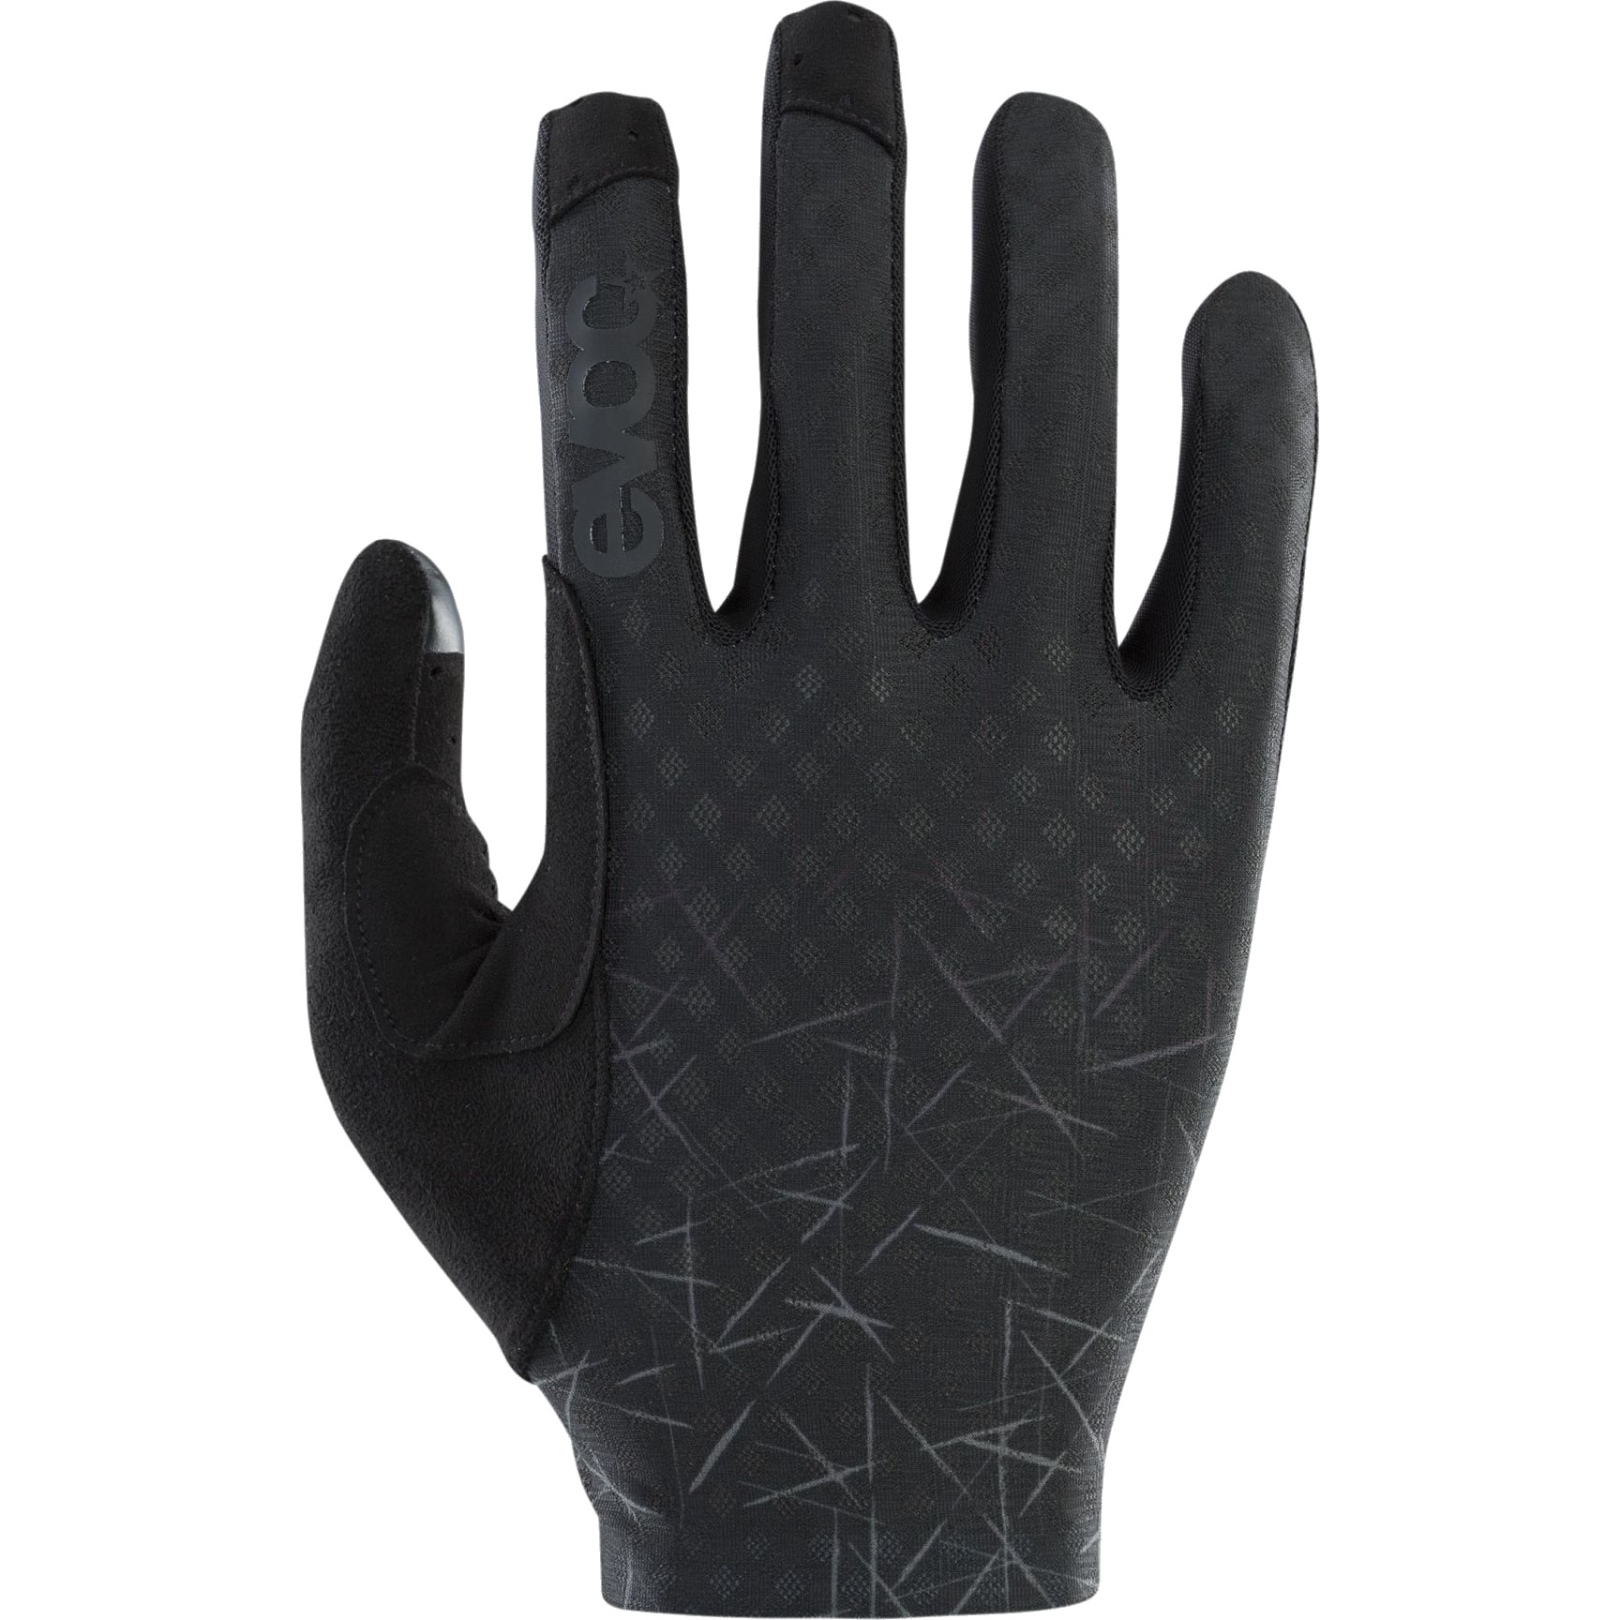 Produktbild von EVOC Lite Touch Glove Handschuhe - Schwarz